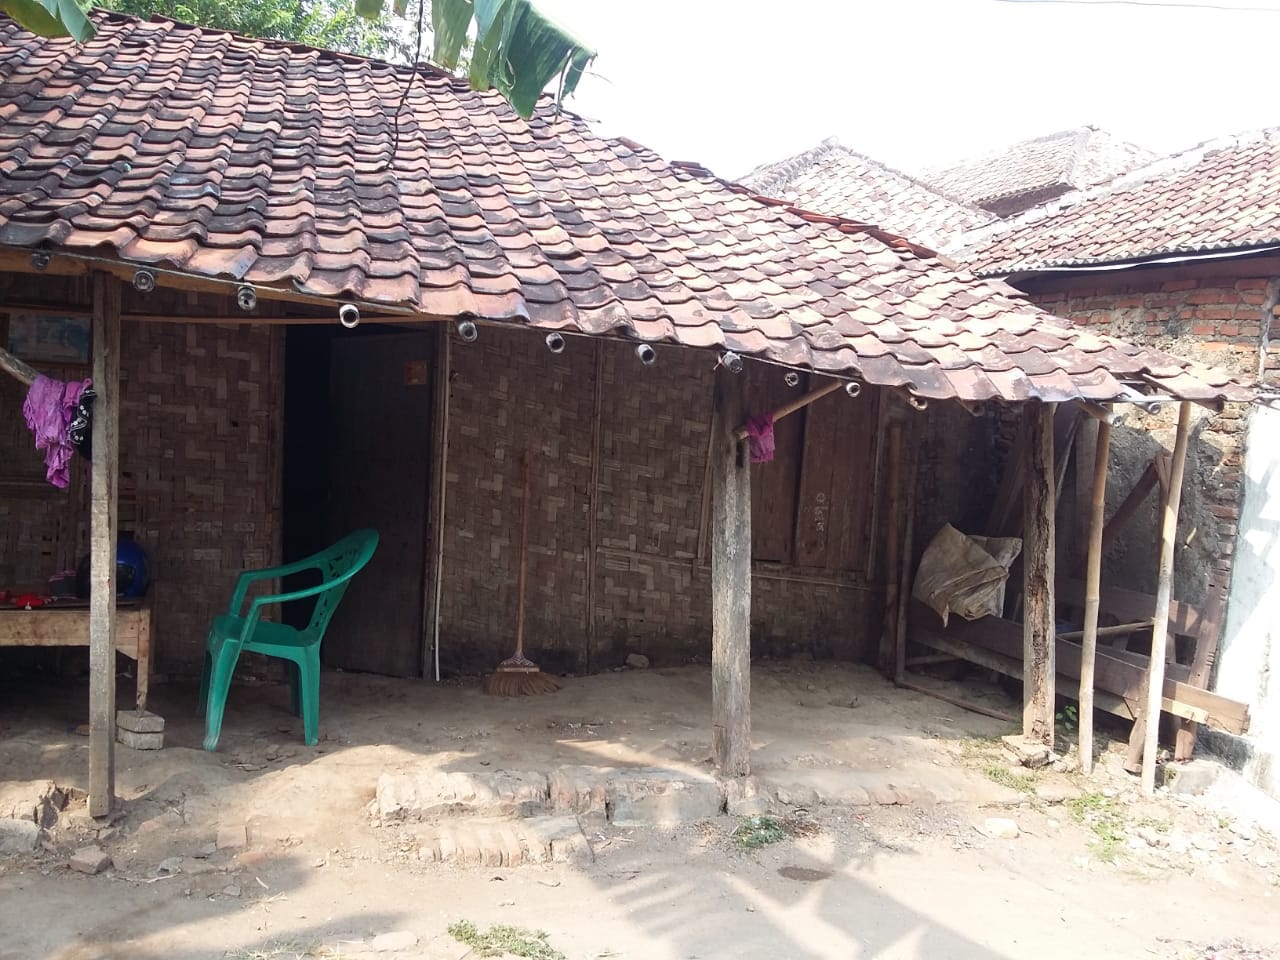  Rumah  Gubuk  Bambu Jasa Renovasi Kontraktor Rumah  Jual 